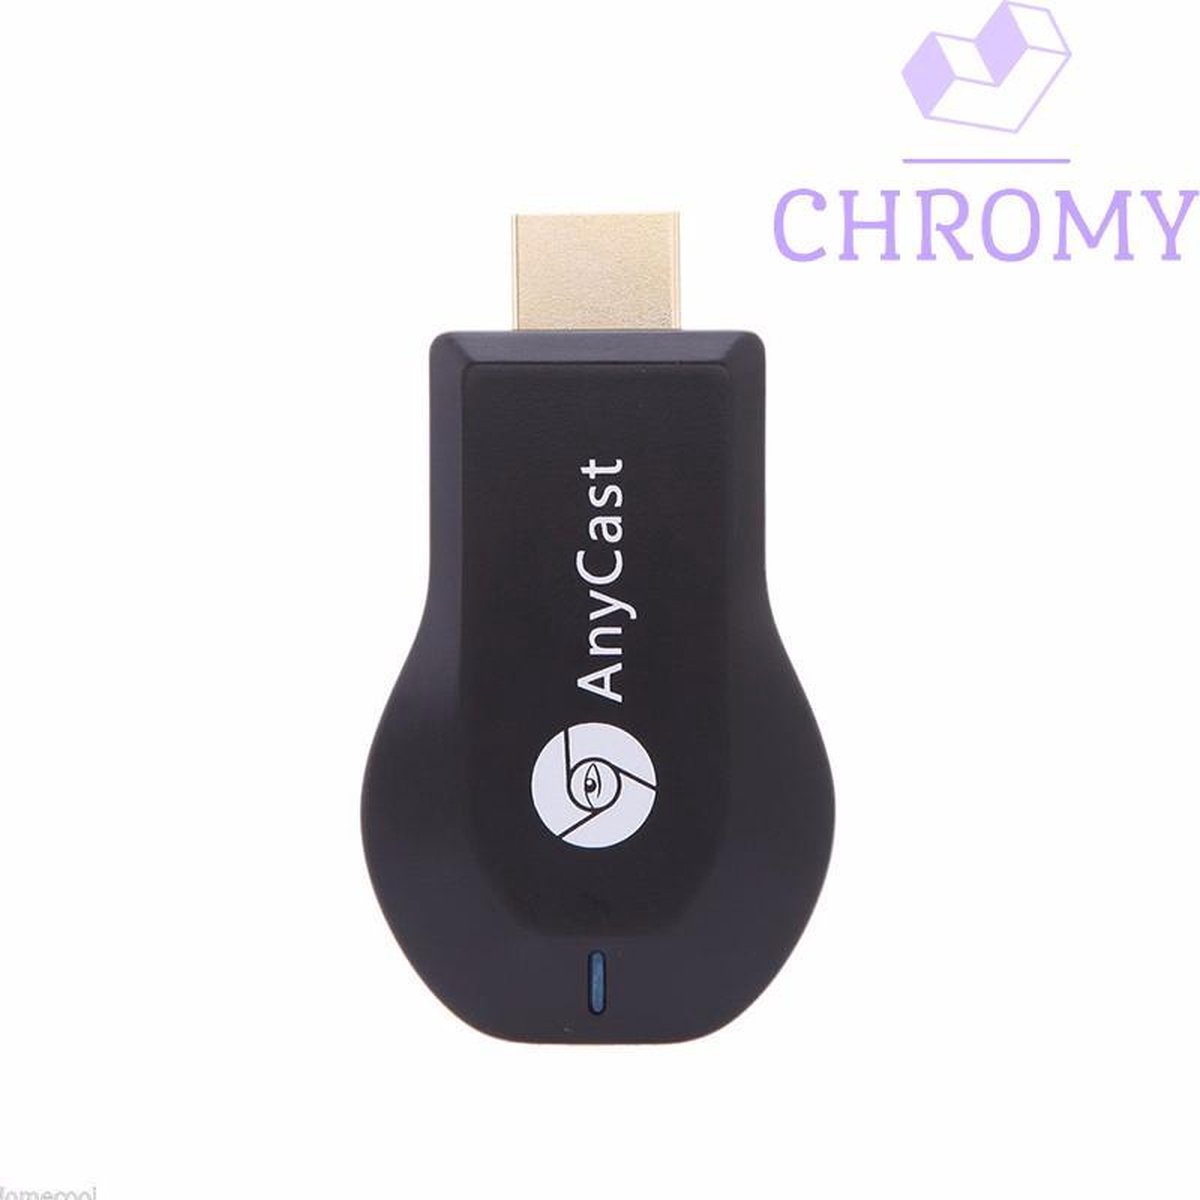 Chromy Anycast M9 Plus - Chromecast - TV Dongle HDMI - Wifi - Google Home -  Smart TV | bol.com